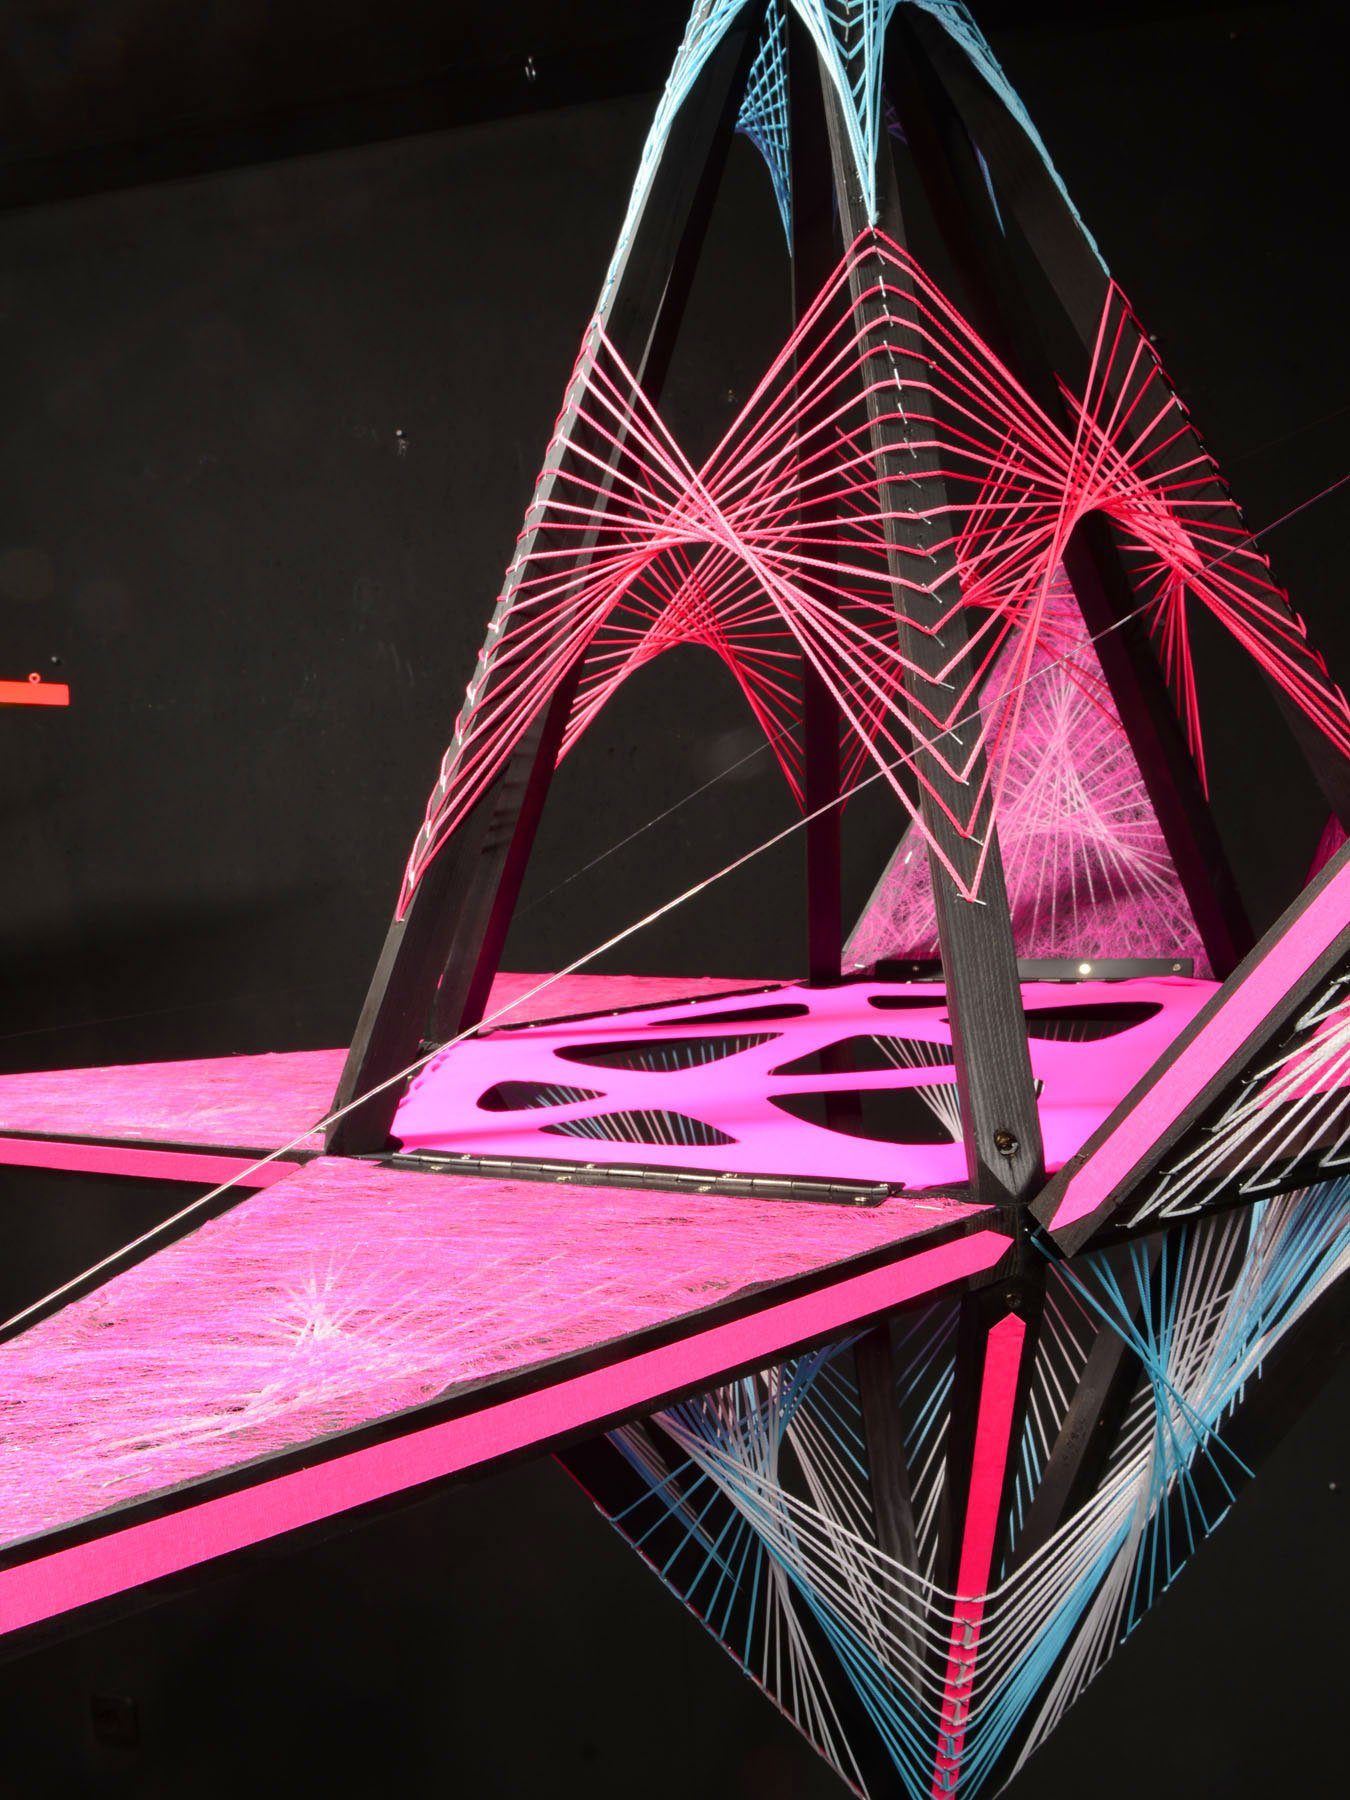 PSYWORK Dekoobjekt Schwarzlicht 3D StringArt Sechseck mit Dreiecken "Pink Shadow", 1,30m, UV-aktiv, leuchtet unter Schwarzlicht